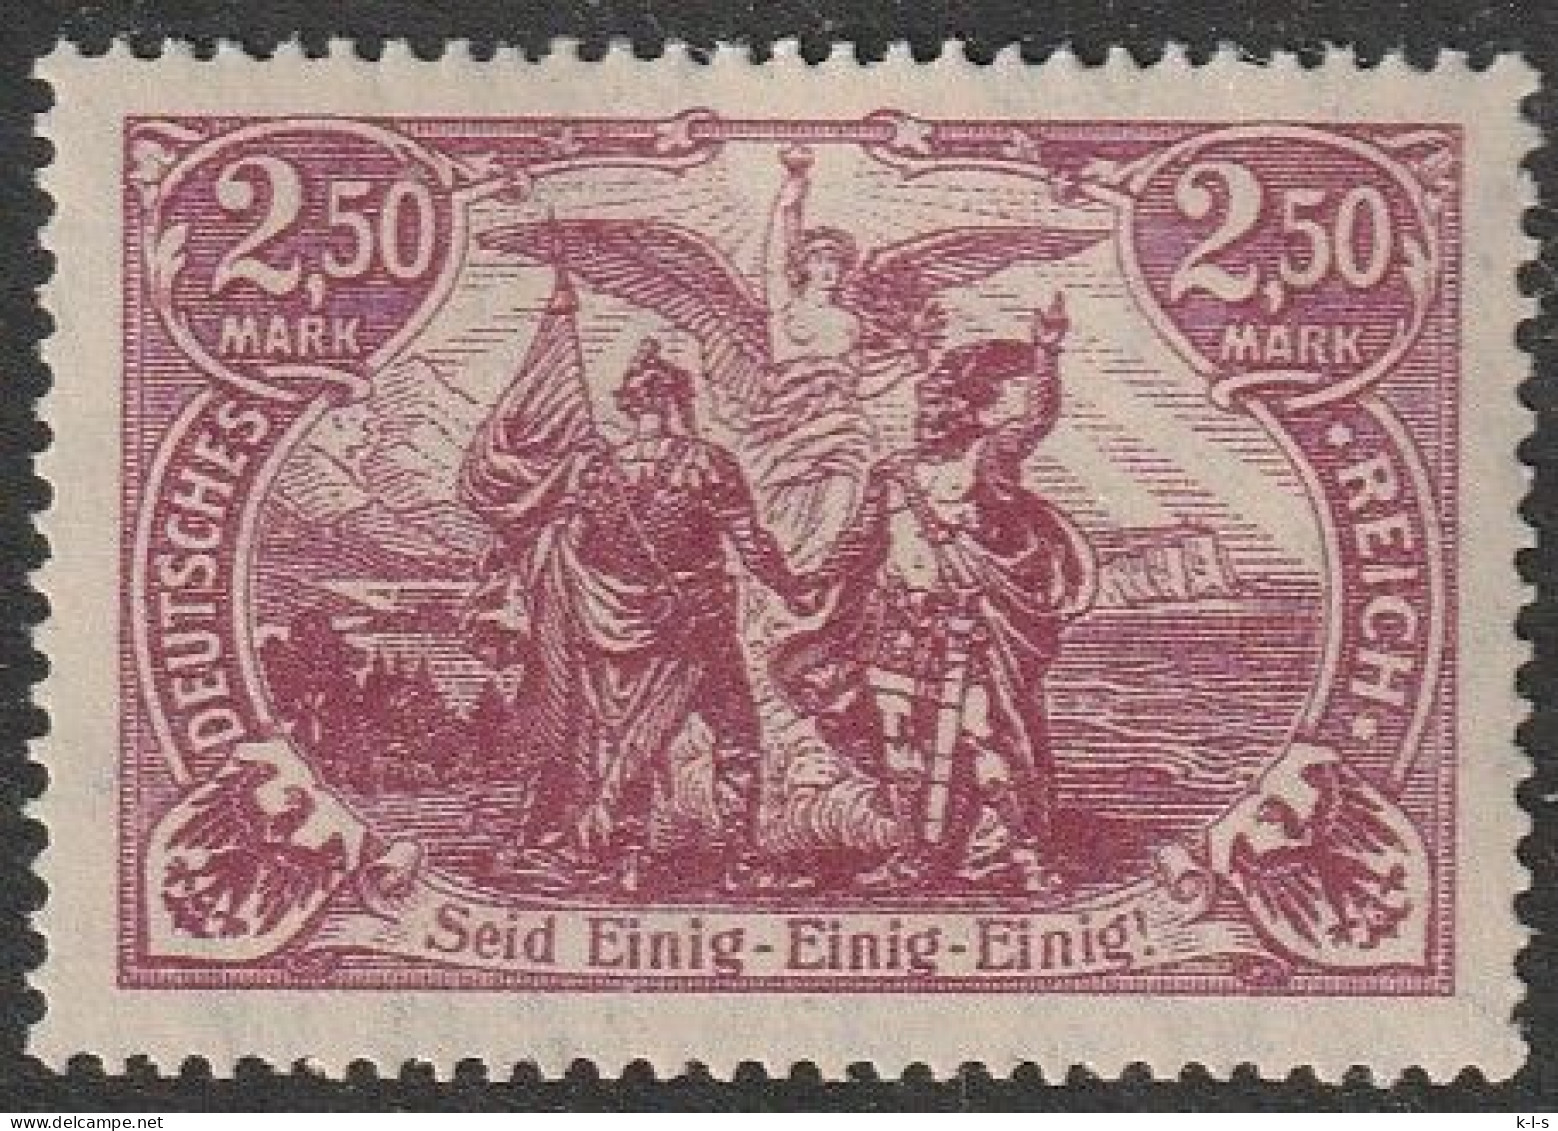 Deut. Reich: 1922, Plattenfehler: Schantl Nr. 115 F 27, 2,50 Mk. Vereinigung Von Nord- Und Süddeutschland.  **/MNH - Unused Stamps